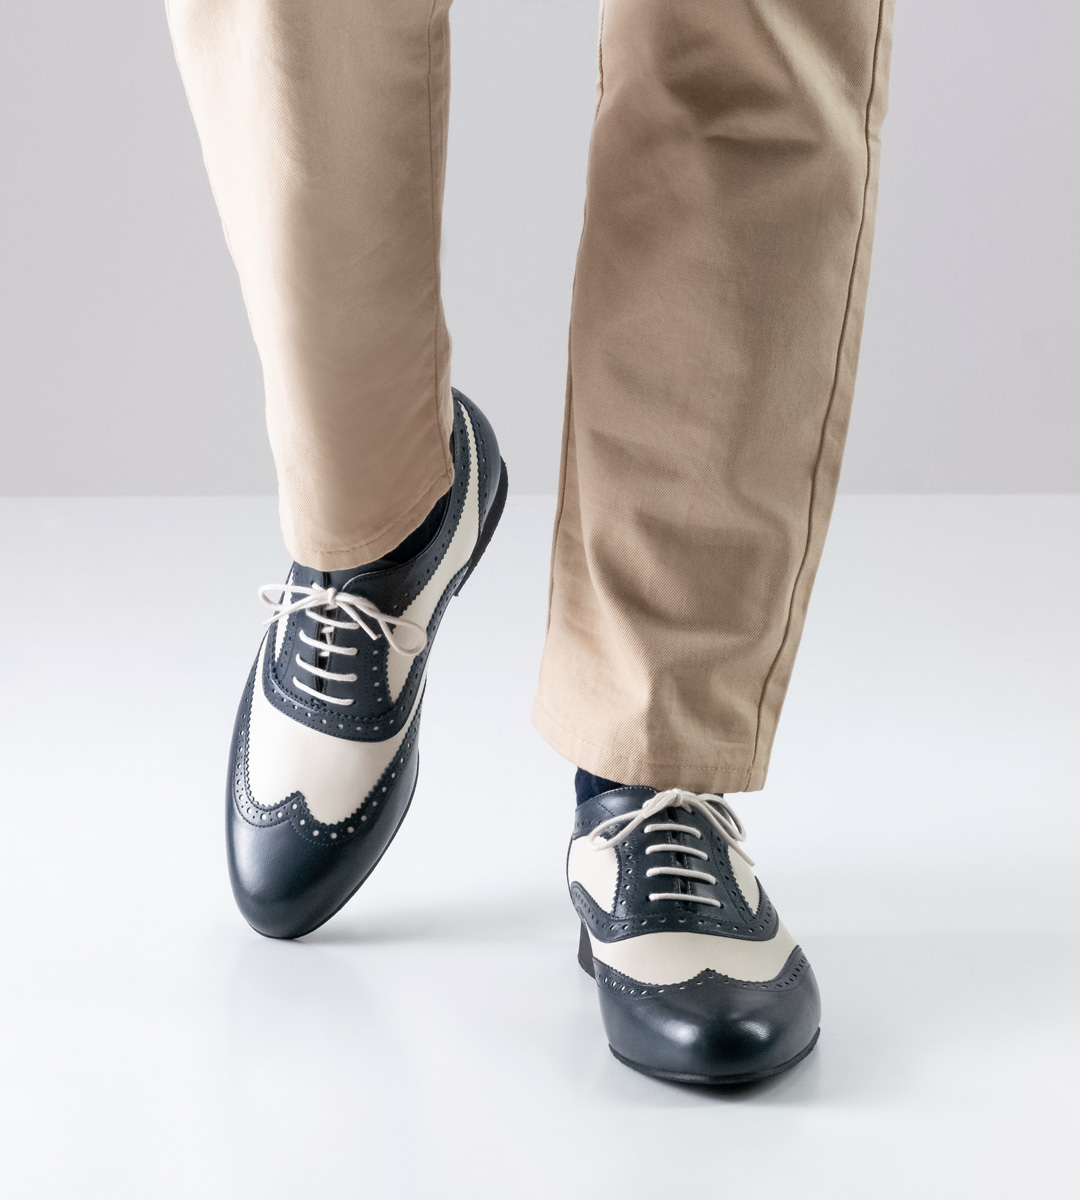 beige trousers in combination with Nueva Epoca men's dance shoe with micro heel